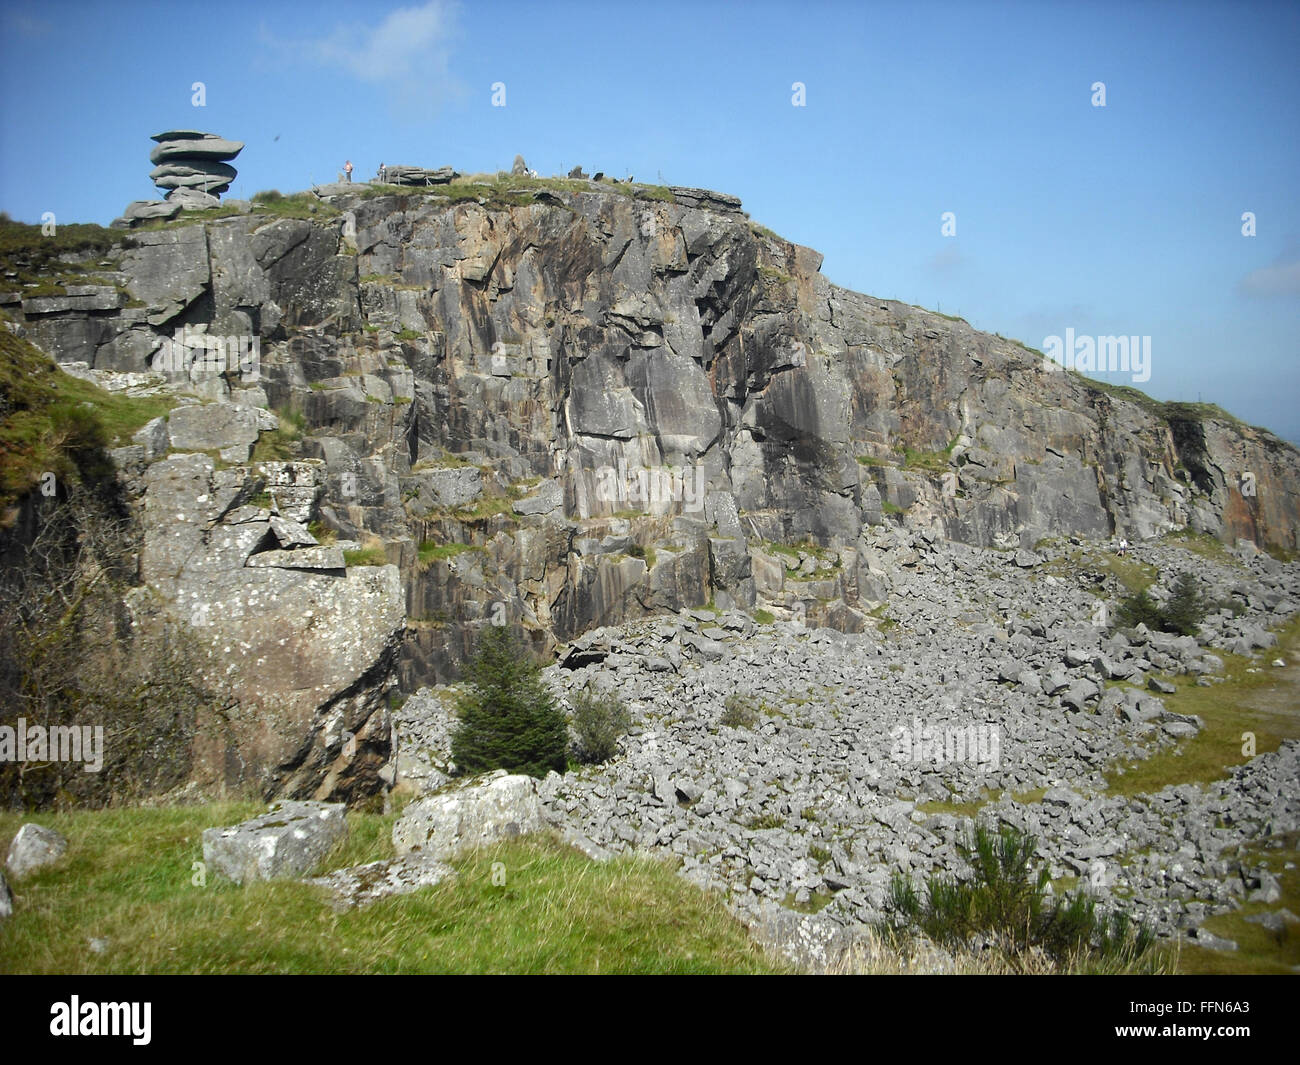 A Landscape of a Quarry in Liskeard, Cornwall, UK Stock Image - Image of  hills, landscape: 111763907